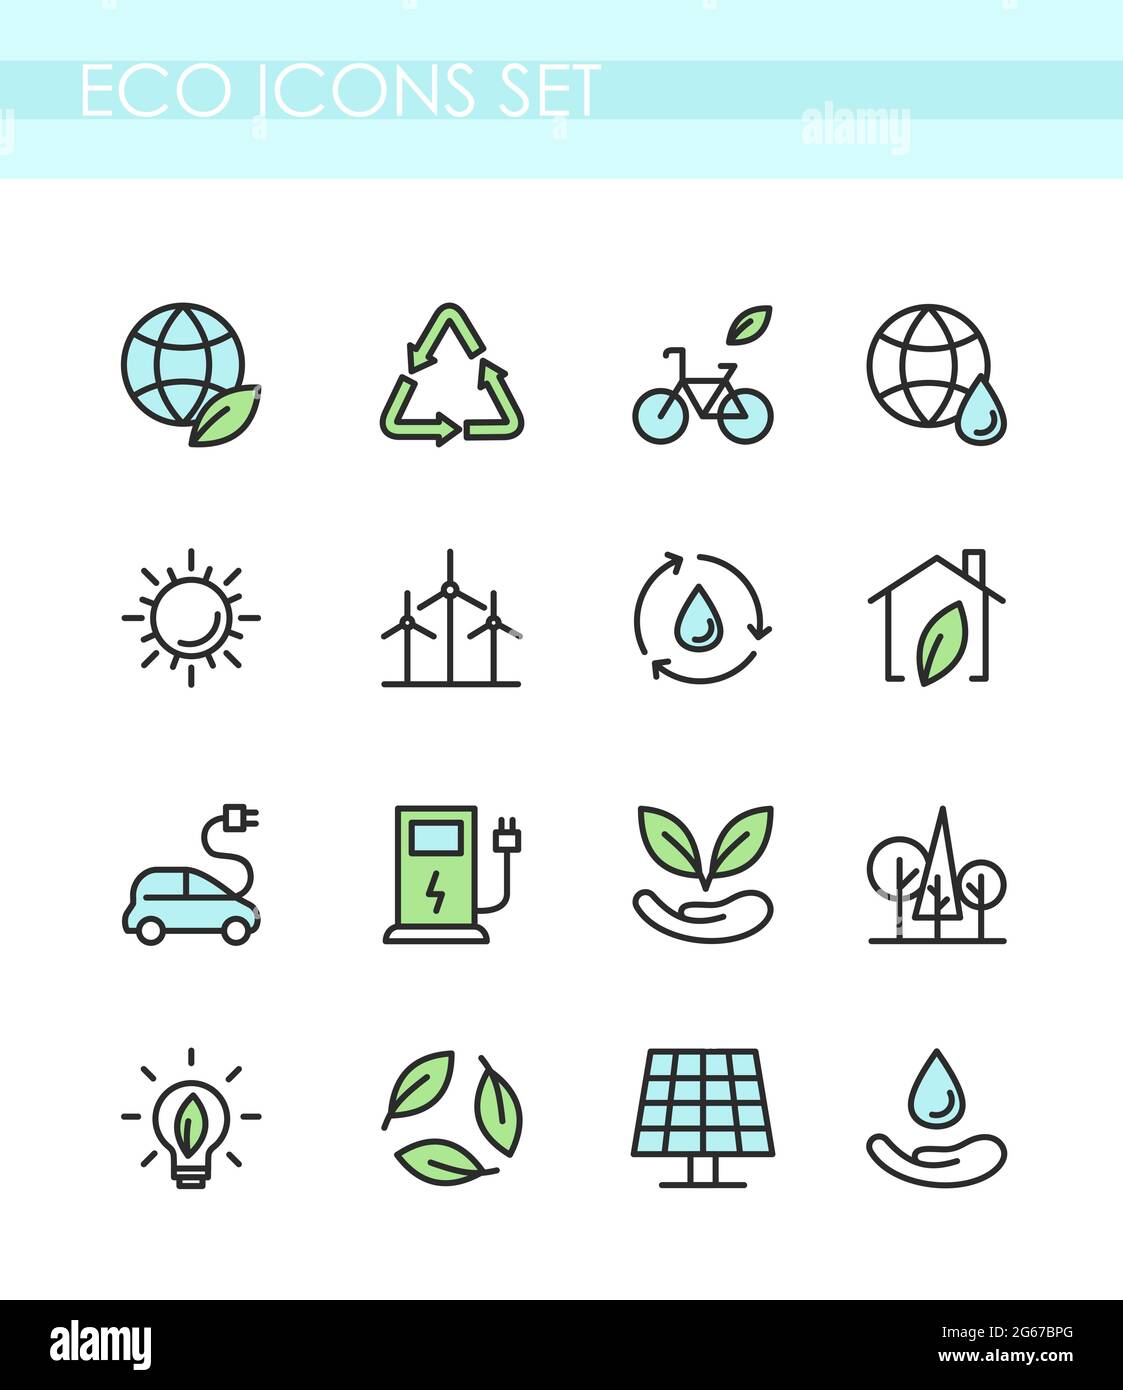 Illustrazione vettoriale insieme di icone ecologiche. Concetto di ecologia, tecnologia verde, biologico, stile di vita sano, energia alternativa, elettrocar. Illustrazione Vettoriale